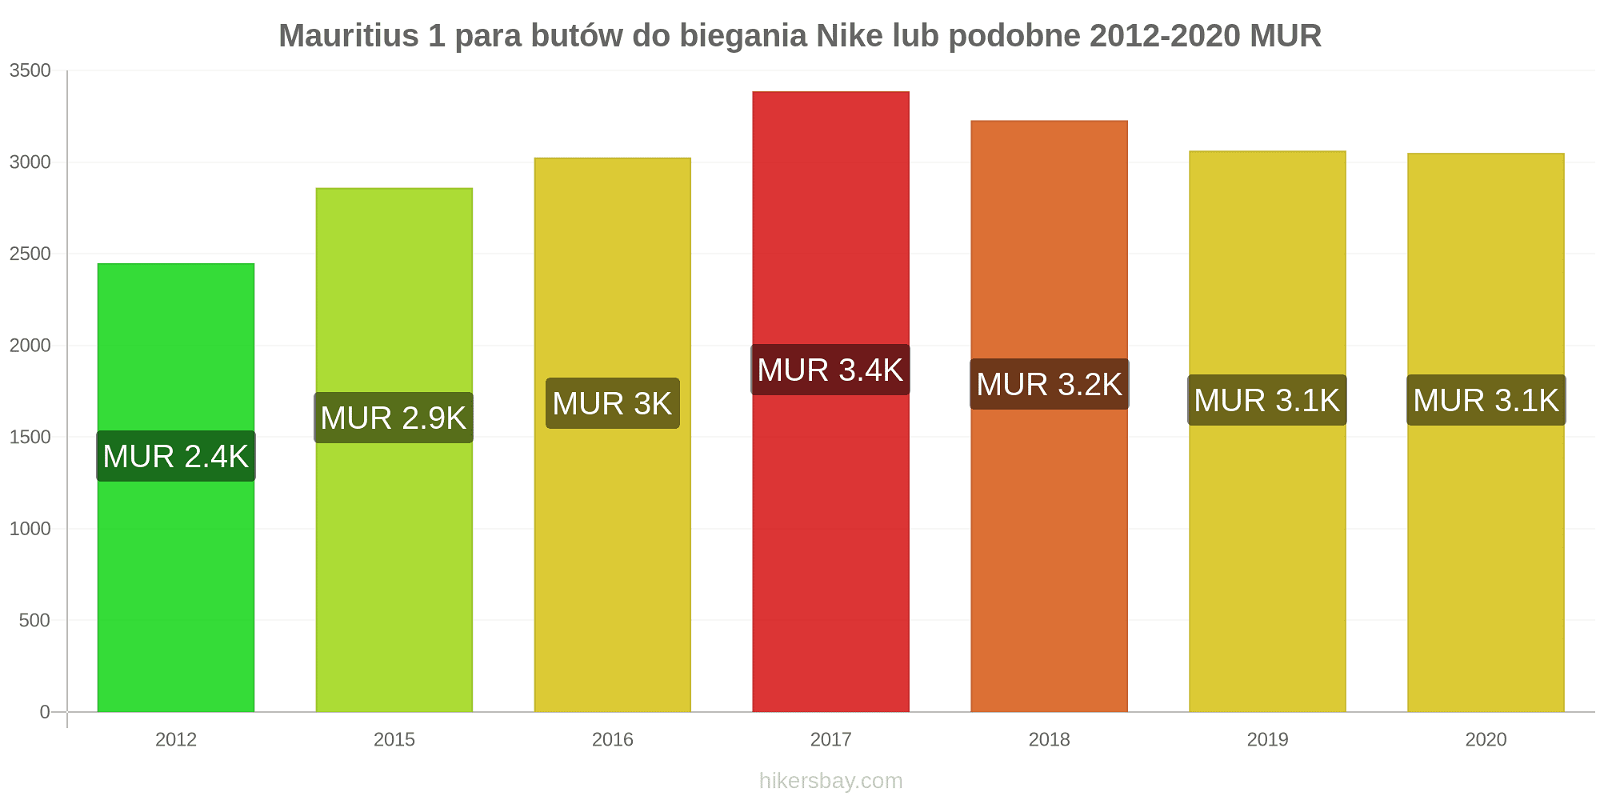 Mauritius zmiany cen 1 para butów do biegania Nike lub podobne hikersbay.com